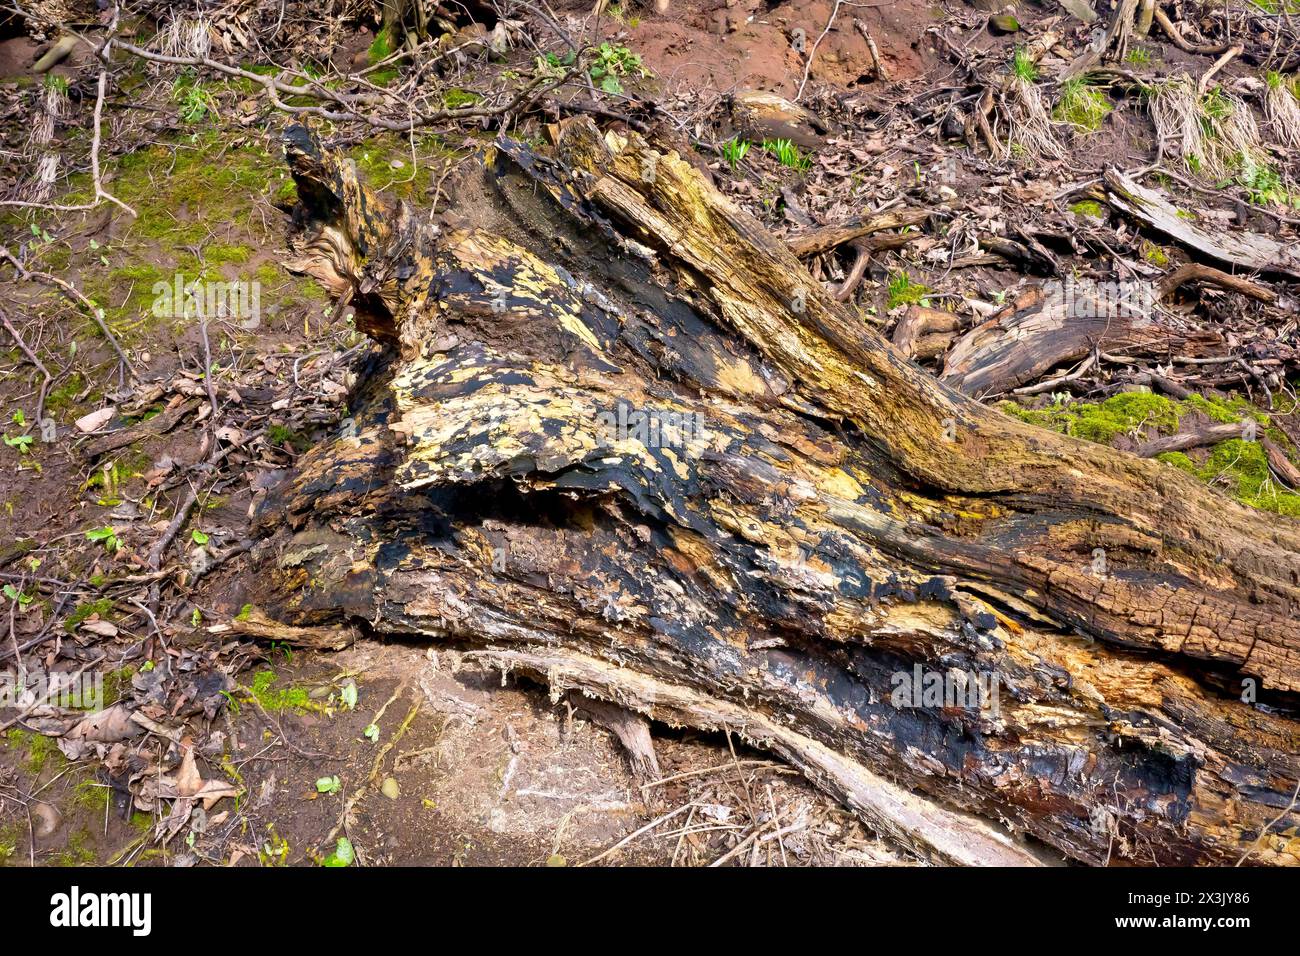 Primo piano che mostra un grande tronco d'albero caduto lasciato marcire in posizione su un terreno boscoso, il processo naturale che divorava il legno. Foto Stock